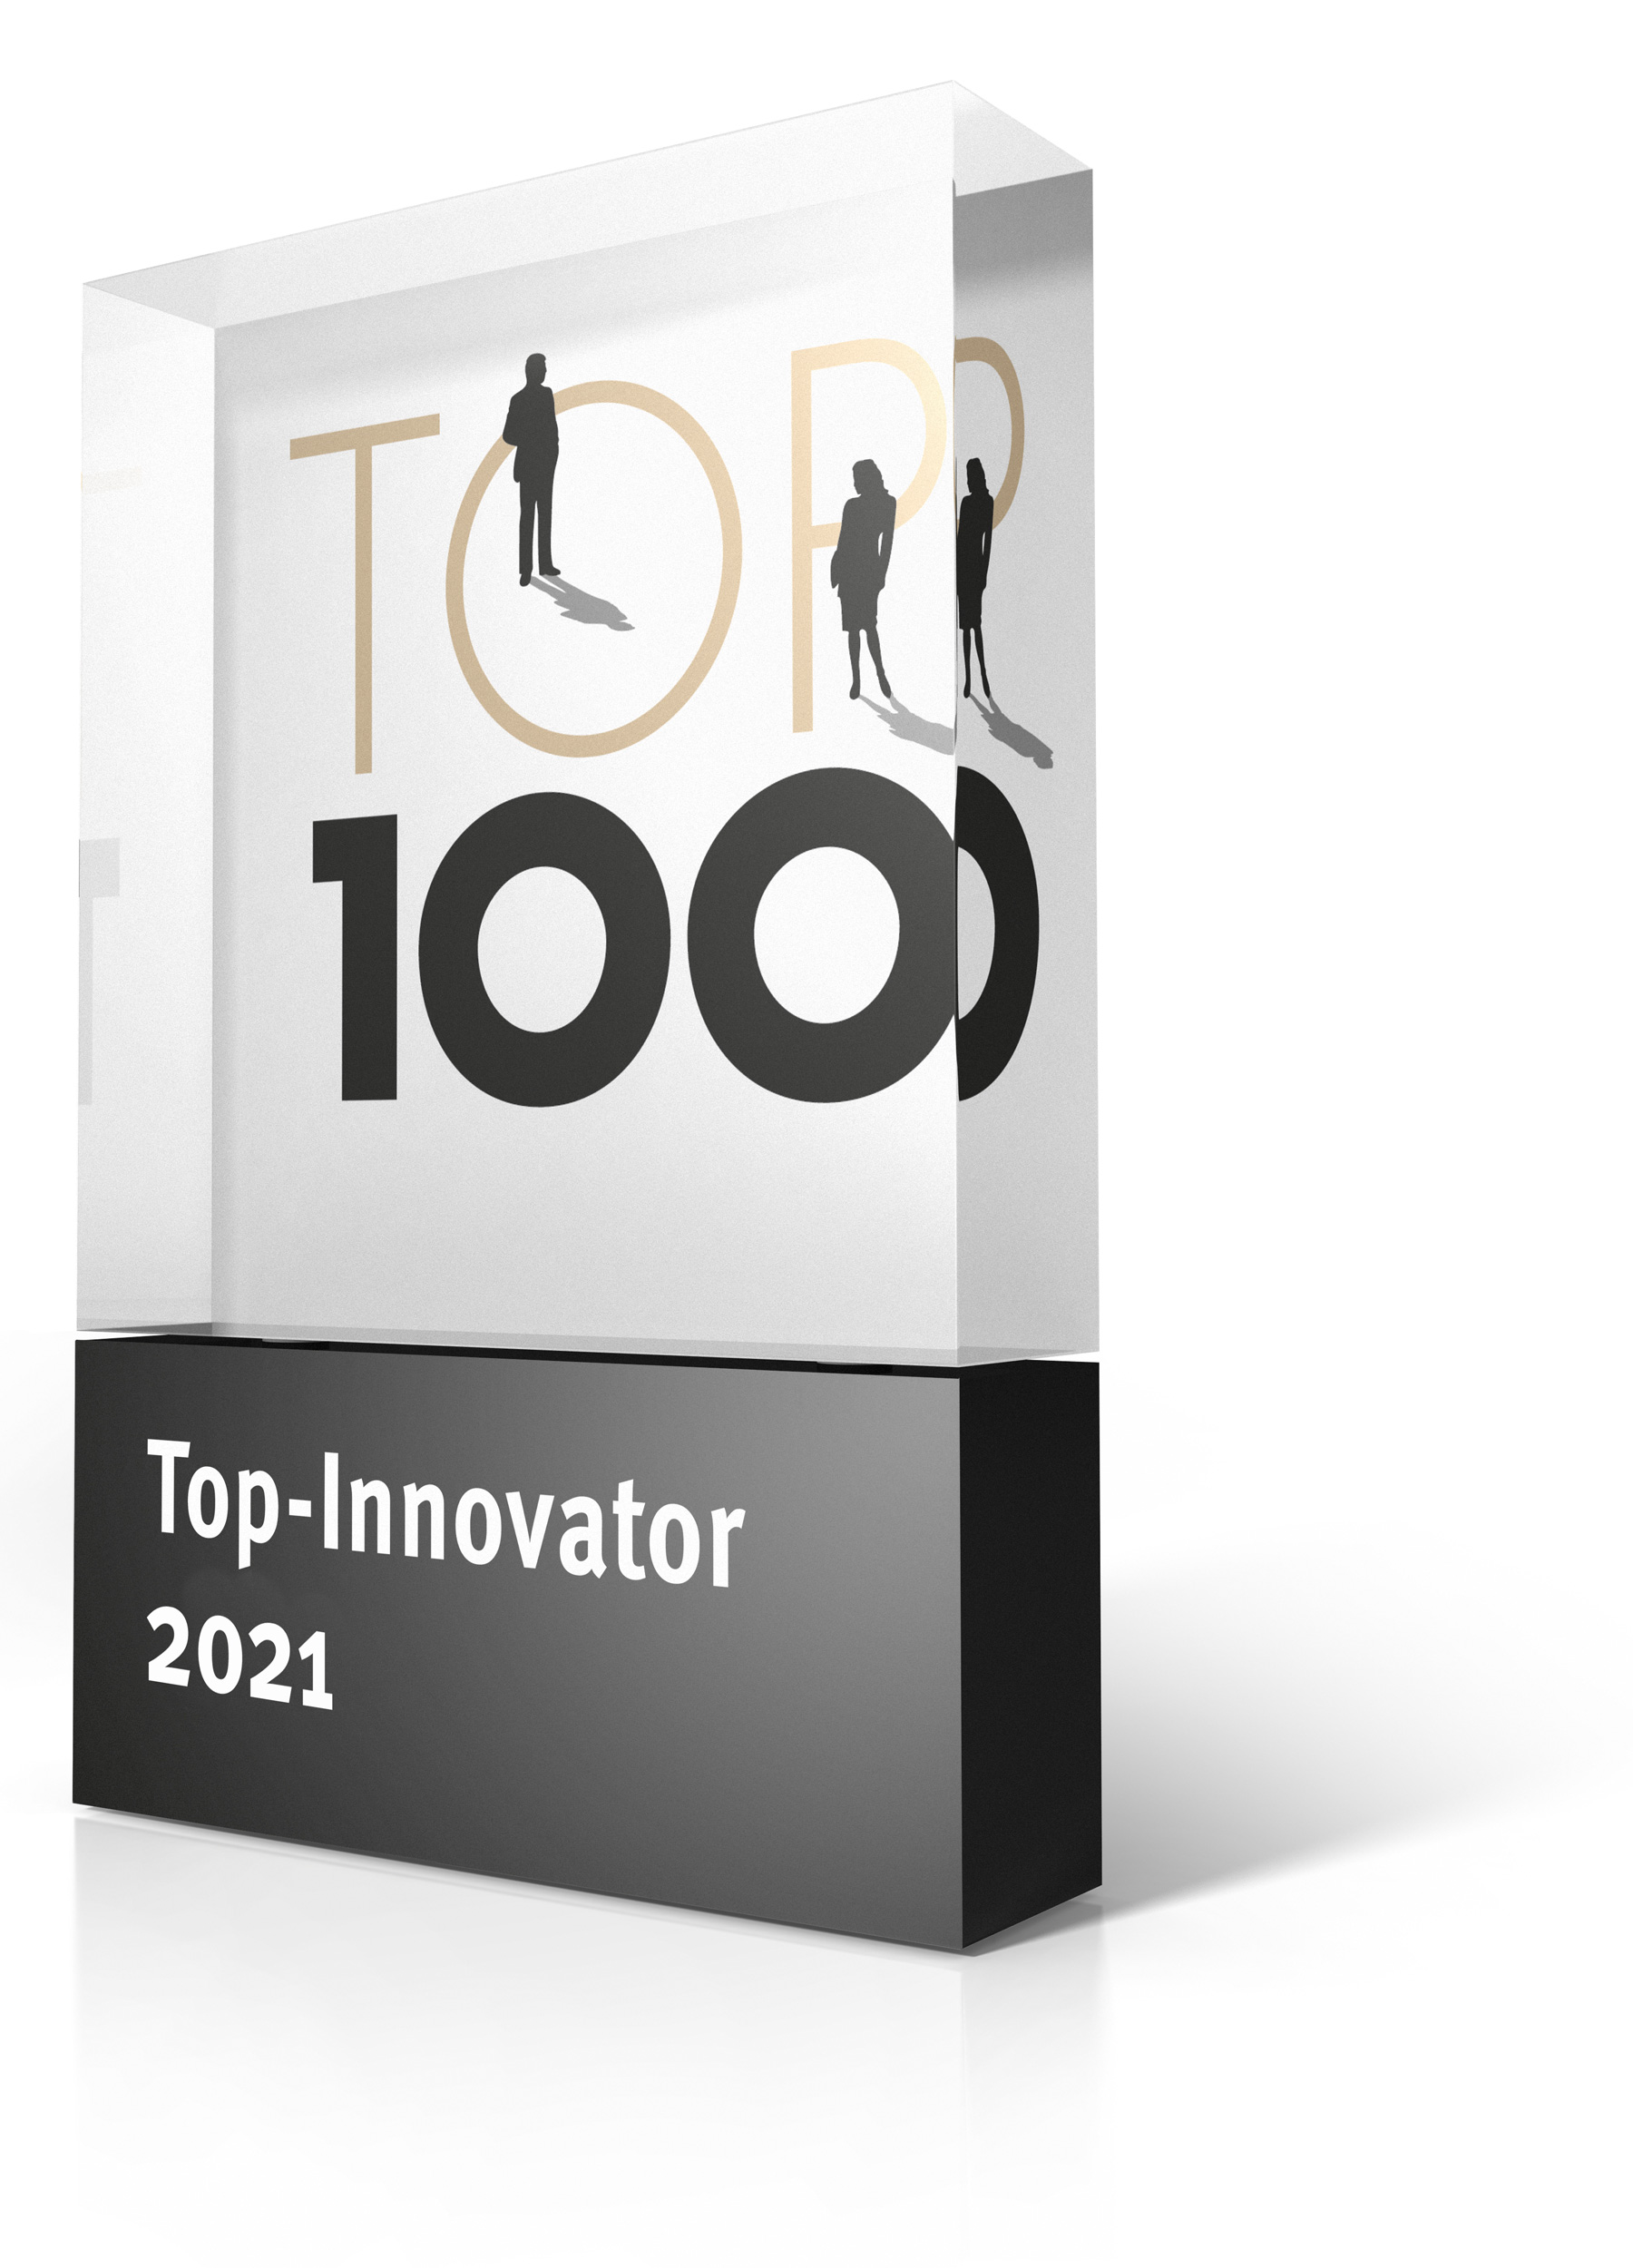 2021 bekam das Unternehmen den Titel „Top-Innovator“ für sein außergewöhnliches Krisenmanagement in Coronazeiten.